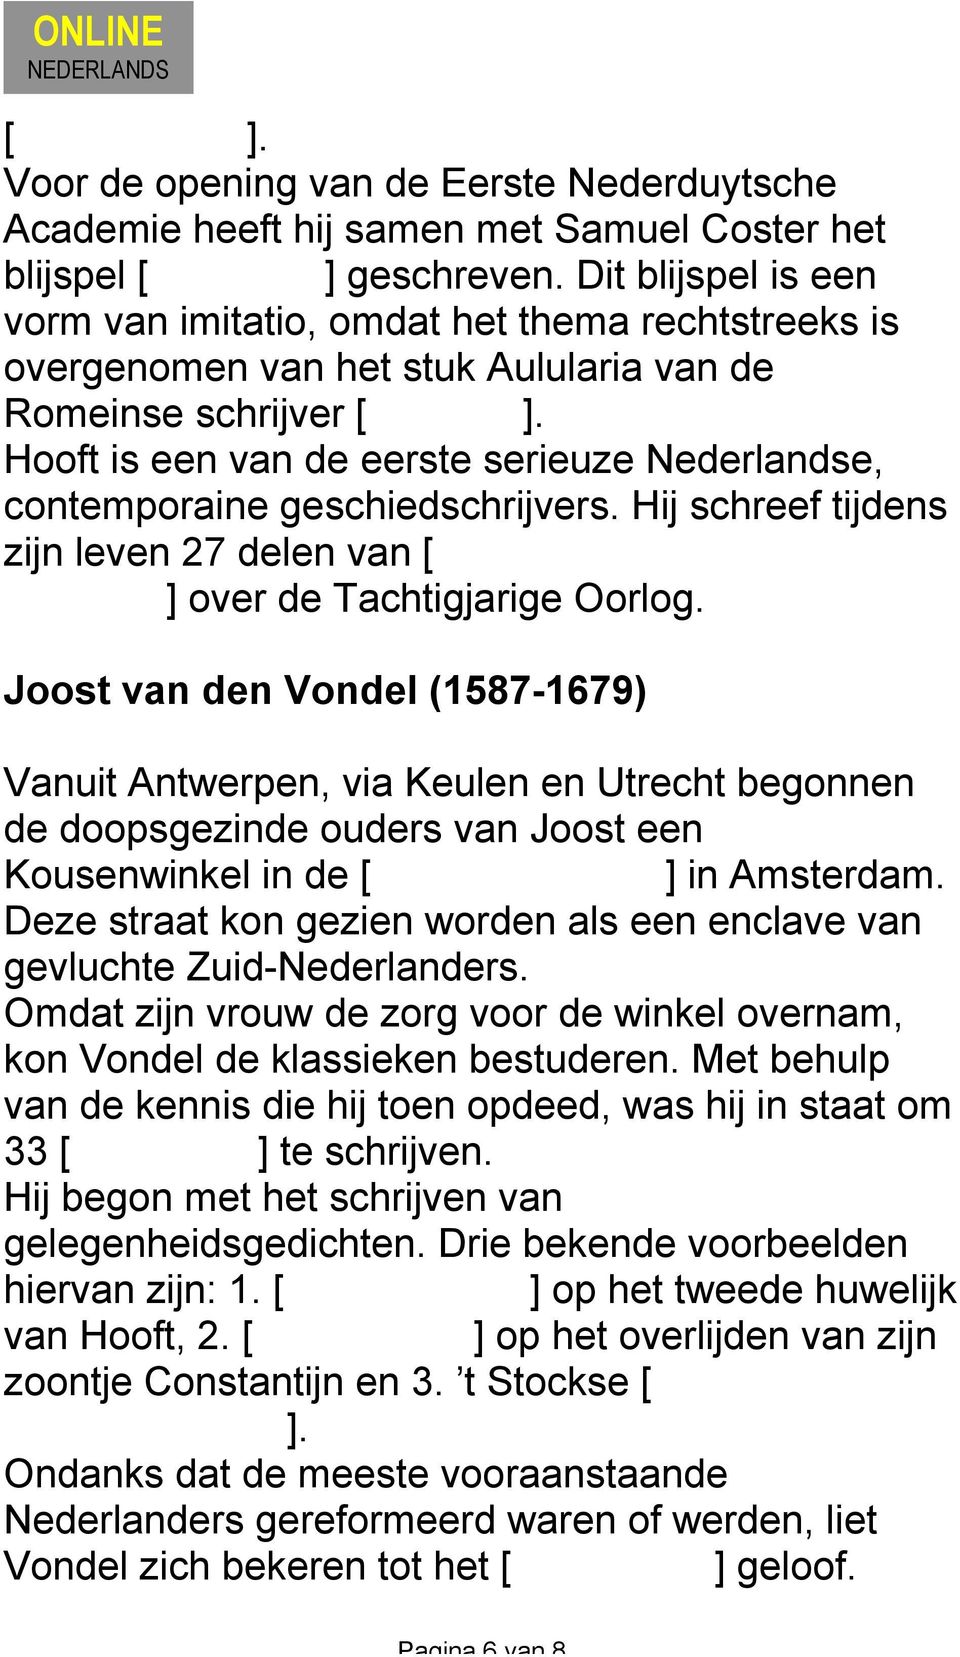 Hooft is een van de eerste serieuze Nederlandse, contemporaine geschiedschrijvers. Hij schreef tijdens zijn leven 27 delen van [ De Nederlandsche historiën ] over de Tachtigjarige Oorlog.